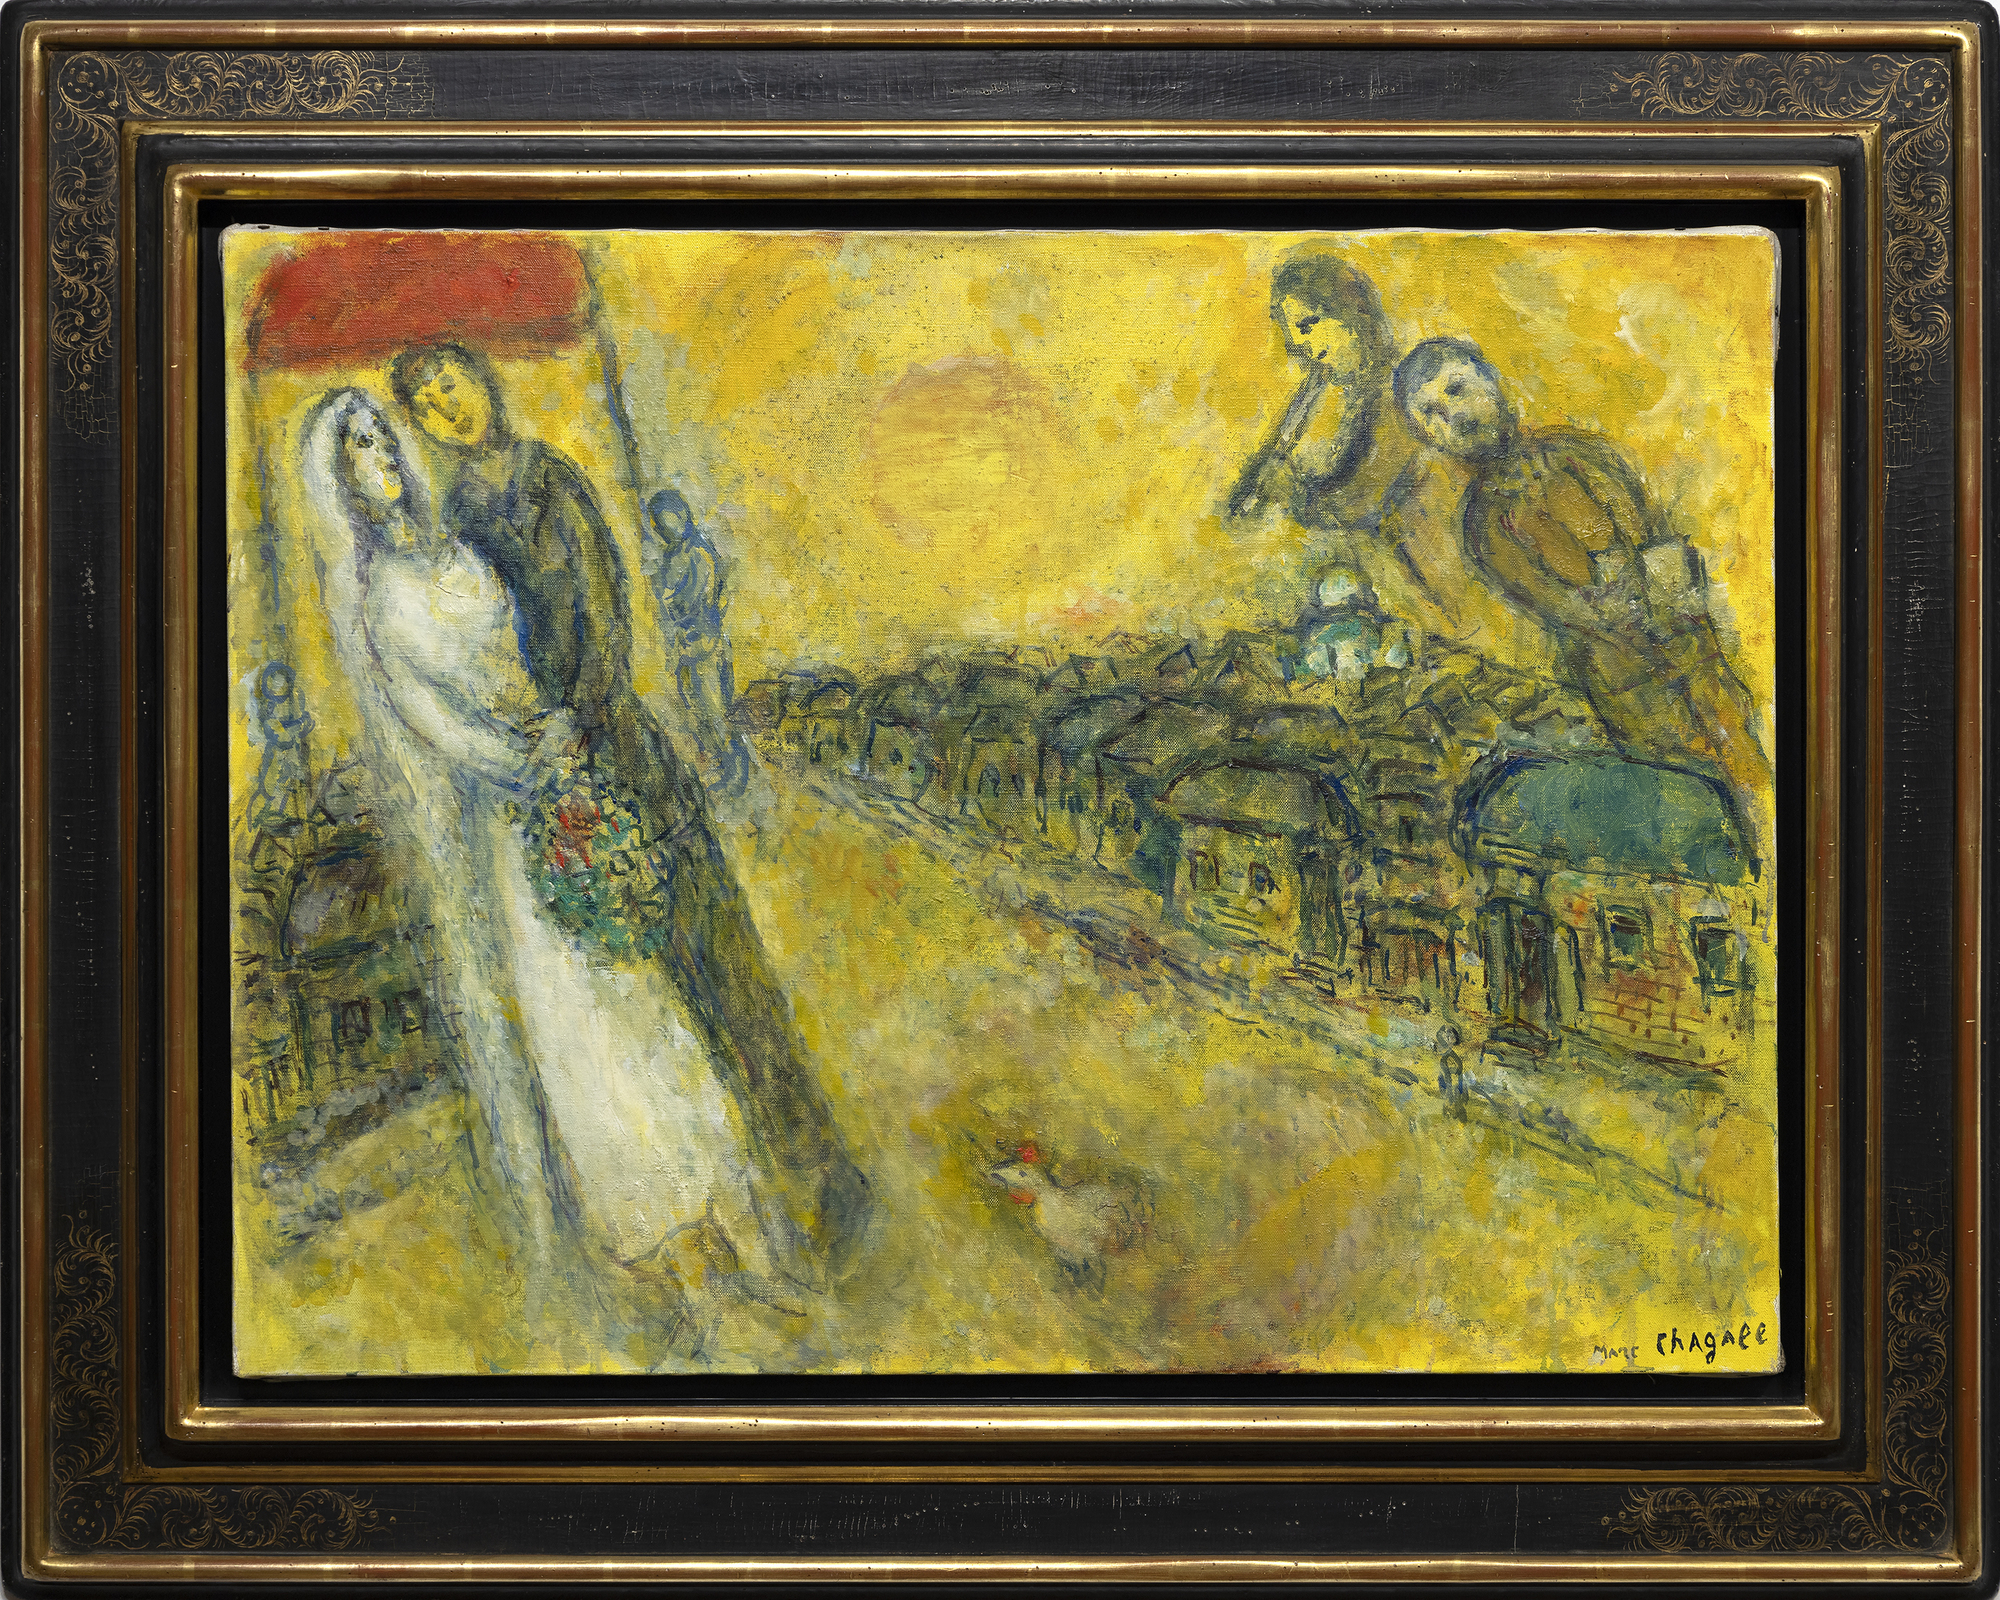 El mundo de Marc Chagall no puede ser contenido ni limitado por las etiquetas que le ponemos. Es un mundo de imágenes y significados que forman su propio discurso espléndidamente místico. Les Mariés sous le baldaquin (Los novios bajo el baldaquín) fue iniciado cuando el artista entraba en su nonagésimo año, un hombre que había conocido la tragedia y la lucha, pero que nunca olvidó los momentos de placer arrebatador de la vida. Aquí, las delicias de ensueño de una boda en un pueblo ruso, con sus arreglos de asistentes bien vestidos, se nos presentan con un ingenio tan feliz y una inocencia tan alegre que no hay quien se resista a su encanto. Utilizando una emulsión de tonos dorados que combina óleo y aguada opaca al agua, la calidez, la alegría y el optimismo del positivismo habitual de Chagall se envuelven en un resplandor luminoso que sugiere la influencia de los iconos religiosos dorados o de la pintura del Renacimiento temprano que pretendía transmitir la impresión de luz divina o iluminación espiritual. Utilizar una combinación de óleo y gouache puede ser todo un reto. Pero aquí, en Les Mariés sous le baldaquin, Chagall lo emplea para dar a la escena una calidad de otro mundo, casi como si acabara de materializarse a partir del ojo de su mente. La delicadeza de su textura crea la impresión de que la luz emana de la propia obra y confiere un carácter espectral a las figuras que flotan en el cielo.